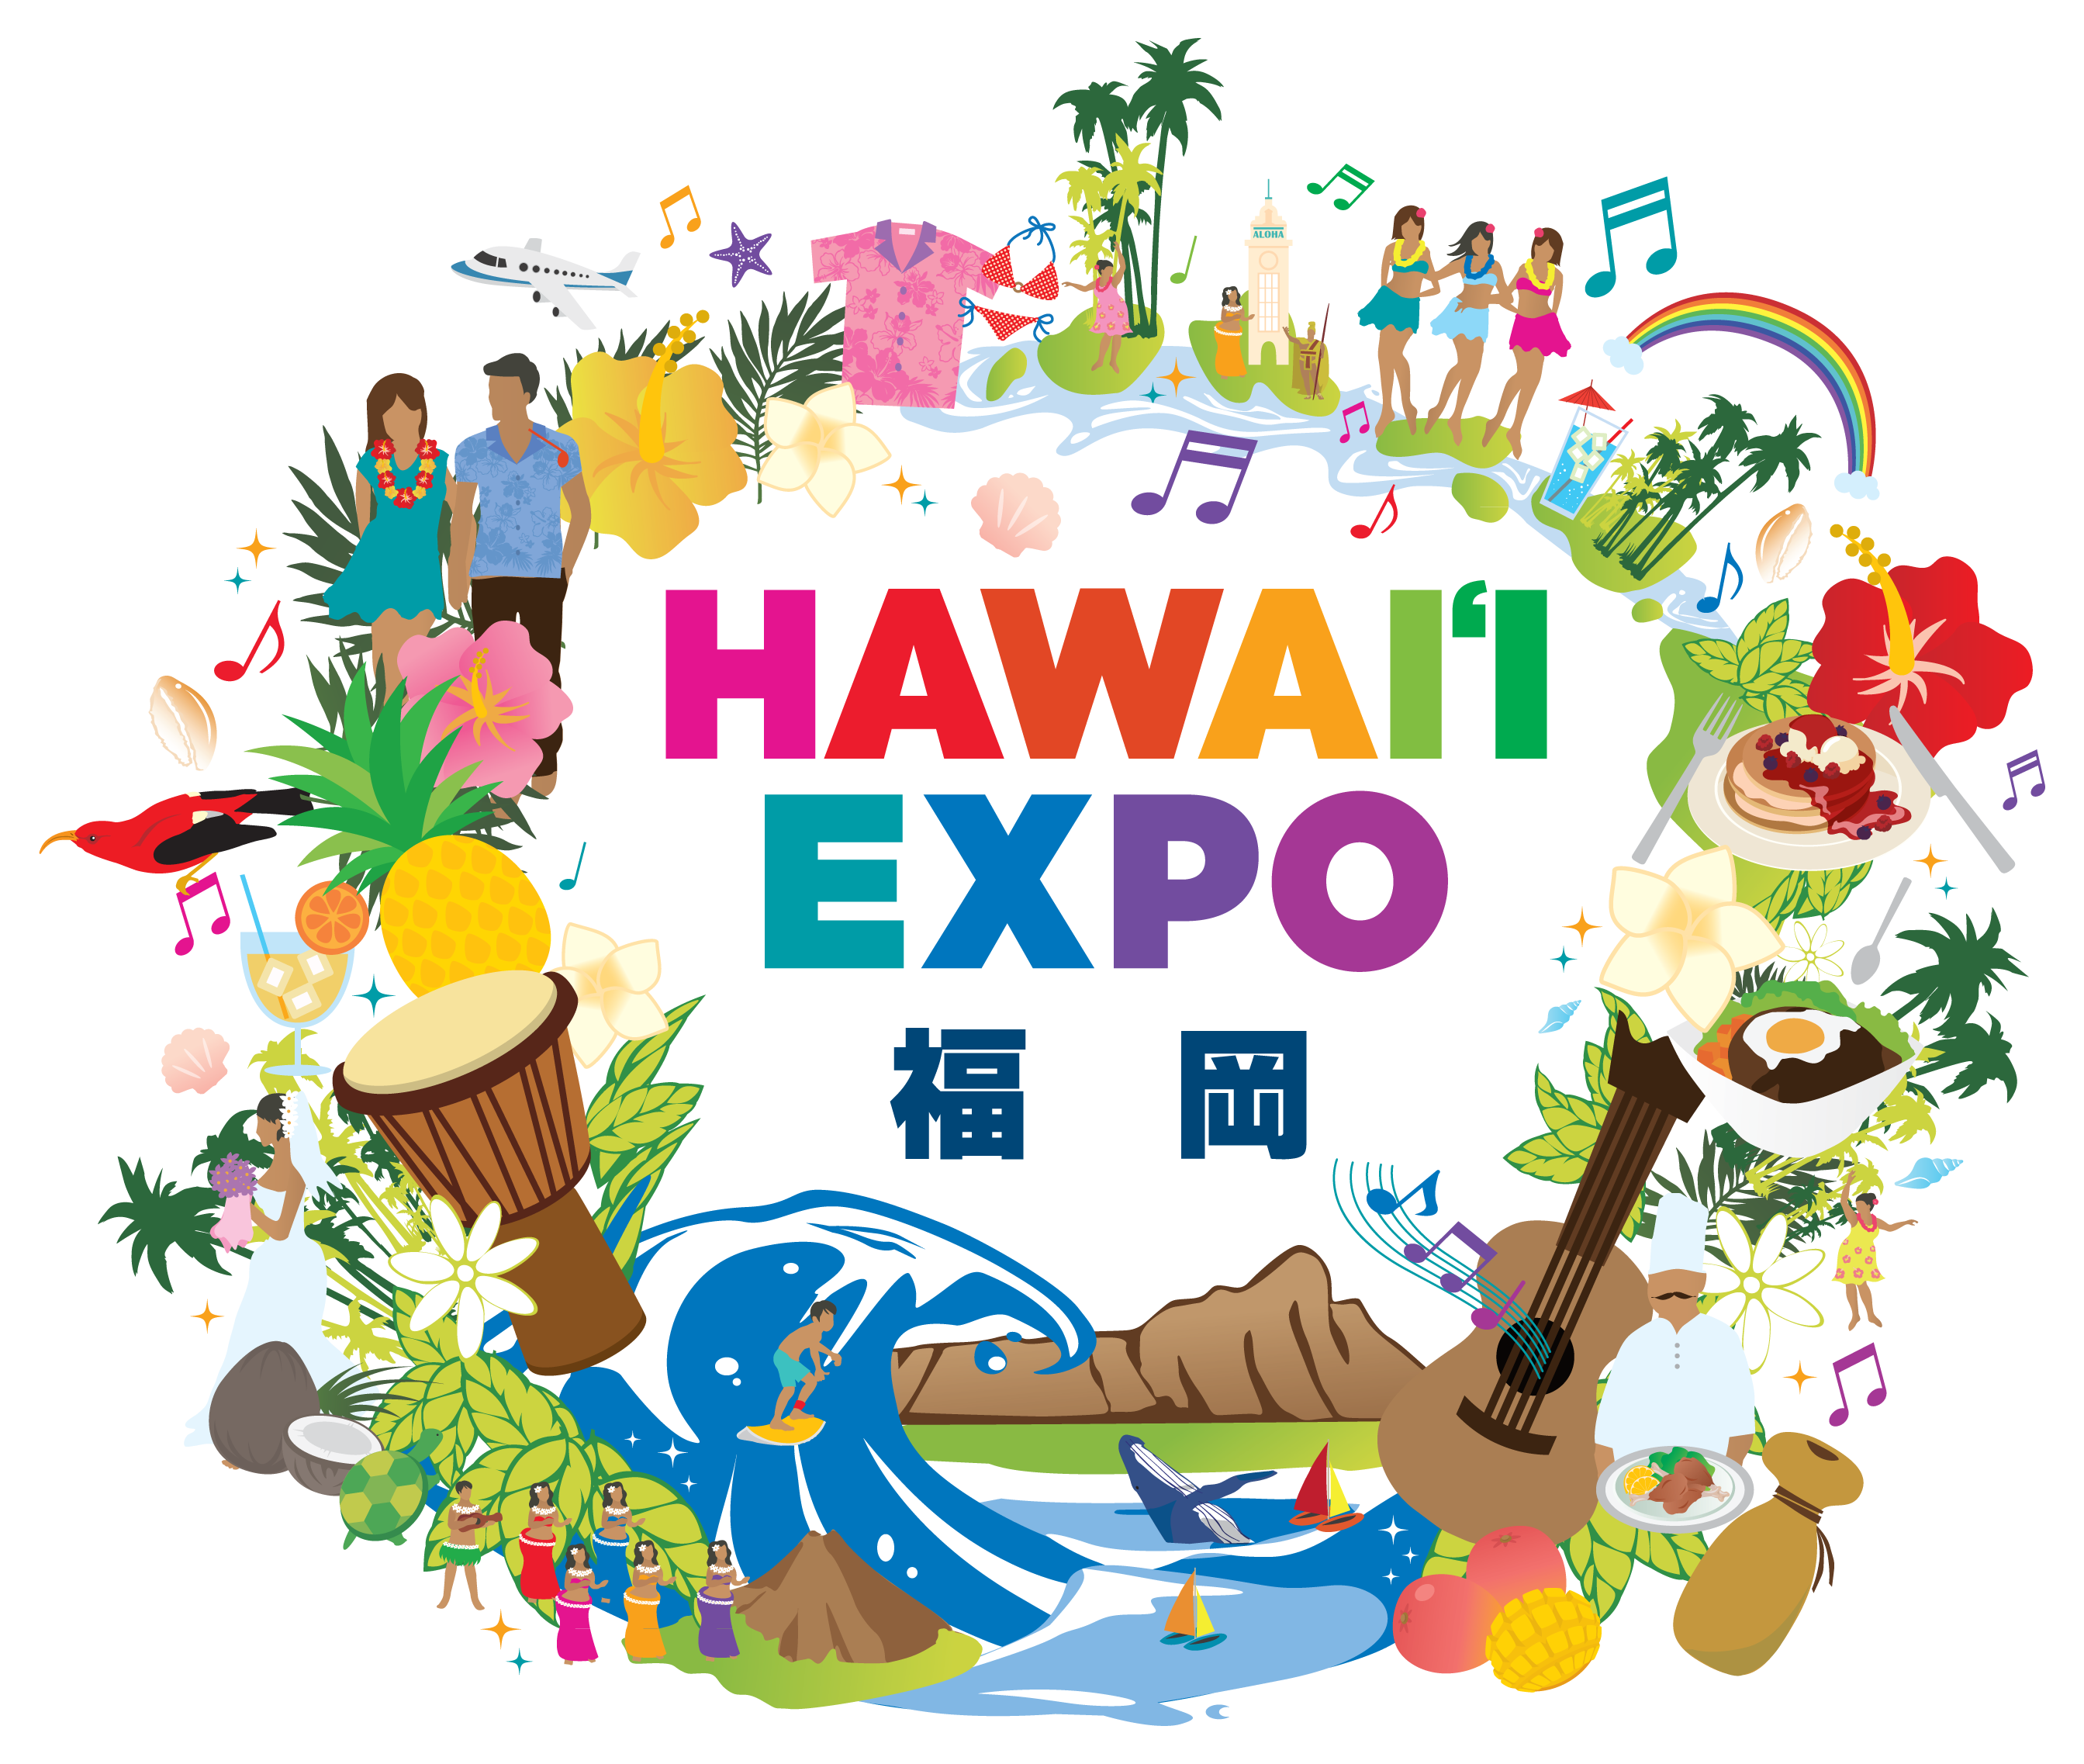 ハワイ州観光局主催 Hawaii Expo福岡 開催まで2ヵ月出展企業18社 ステージプログラム続々と決定 ハワイ州観光局のプレスリリース